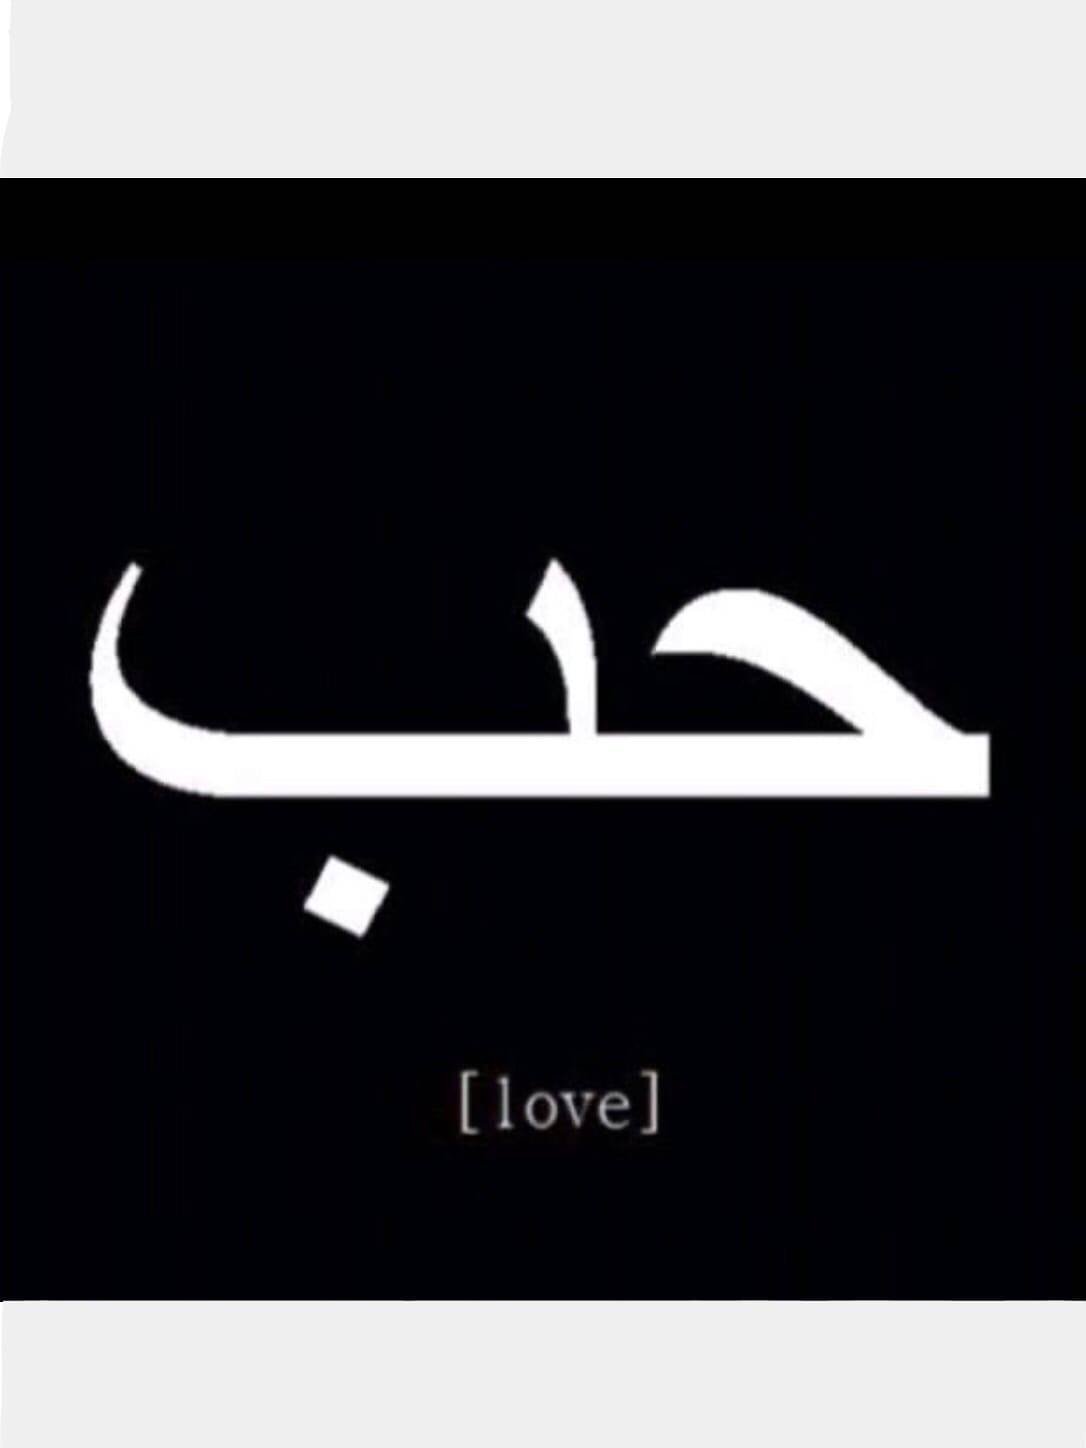 Пожалуйста на арабском. Любовь на арабском. Арабские надписи. Слово любовь на арабском. Love на арабском.